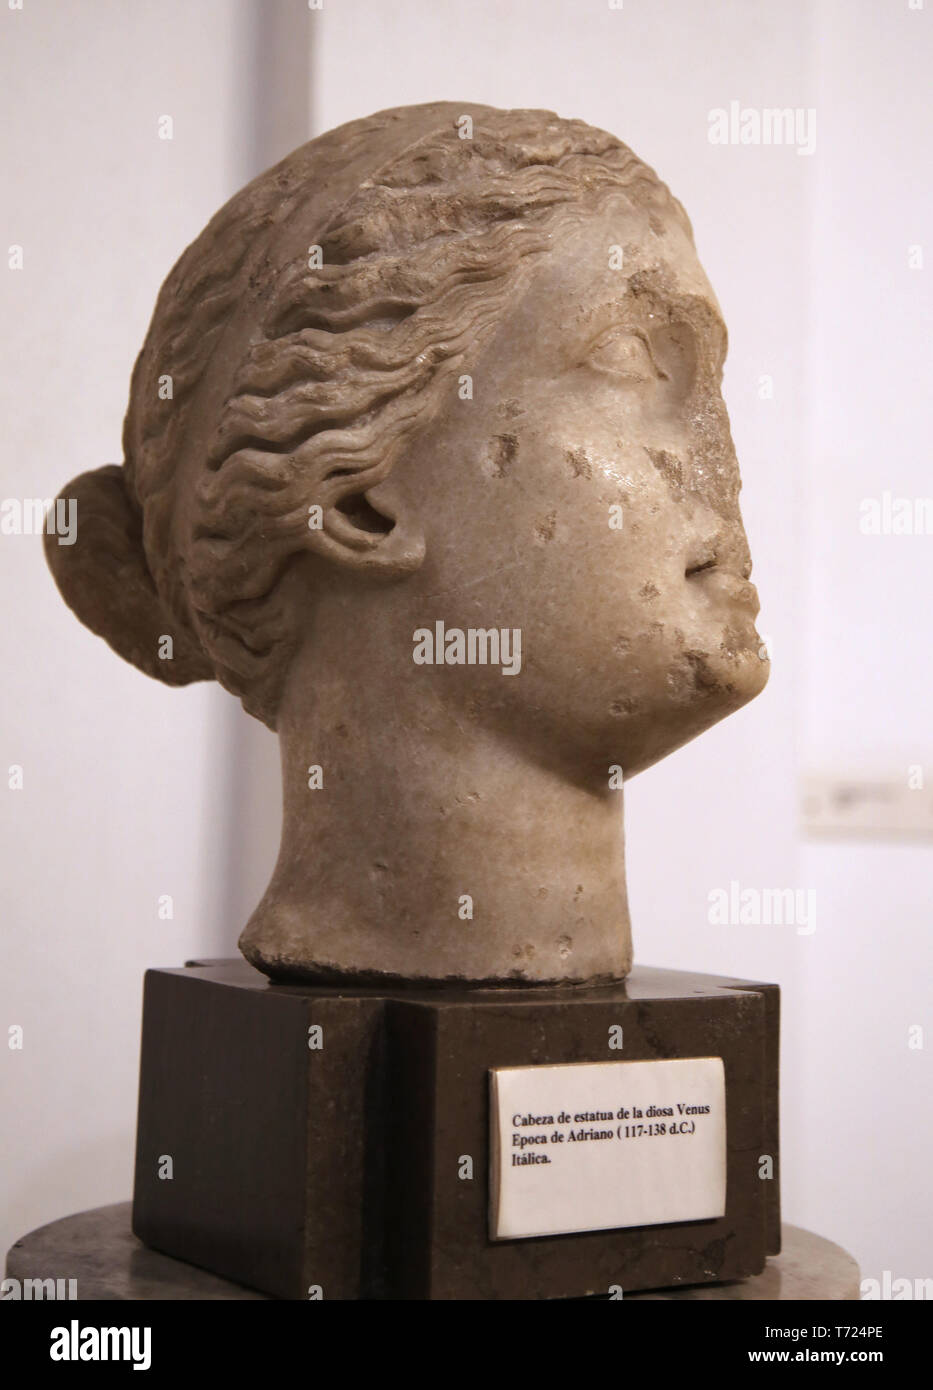 Kopf der Göttin Venus. 117-138 AD. Italica, Andalusien, Spanien. Das archäologische Museum von Sevilla. Andalusien. Spanien. Stockfoto